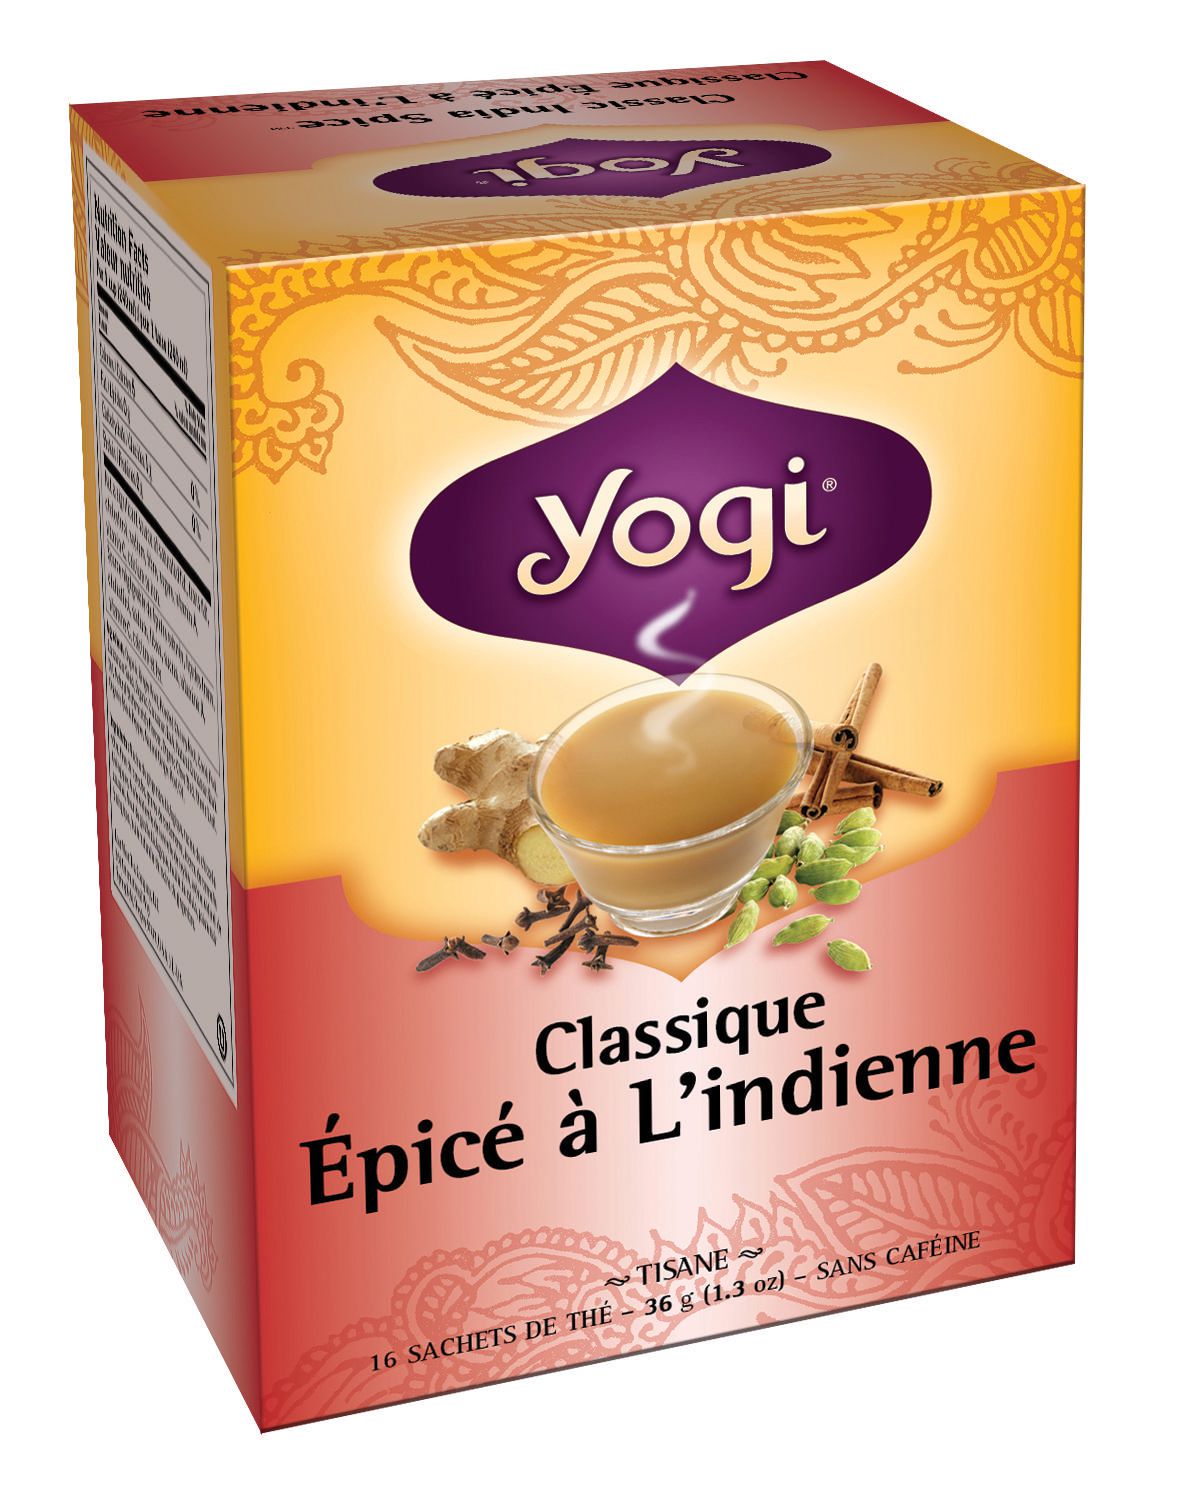 Classic Tea - Yogi Tea